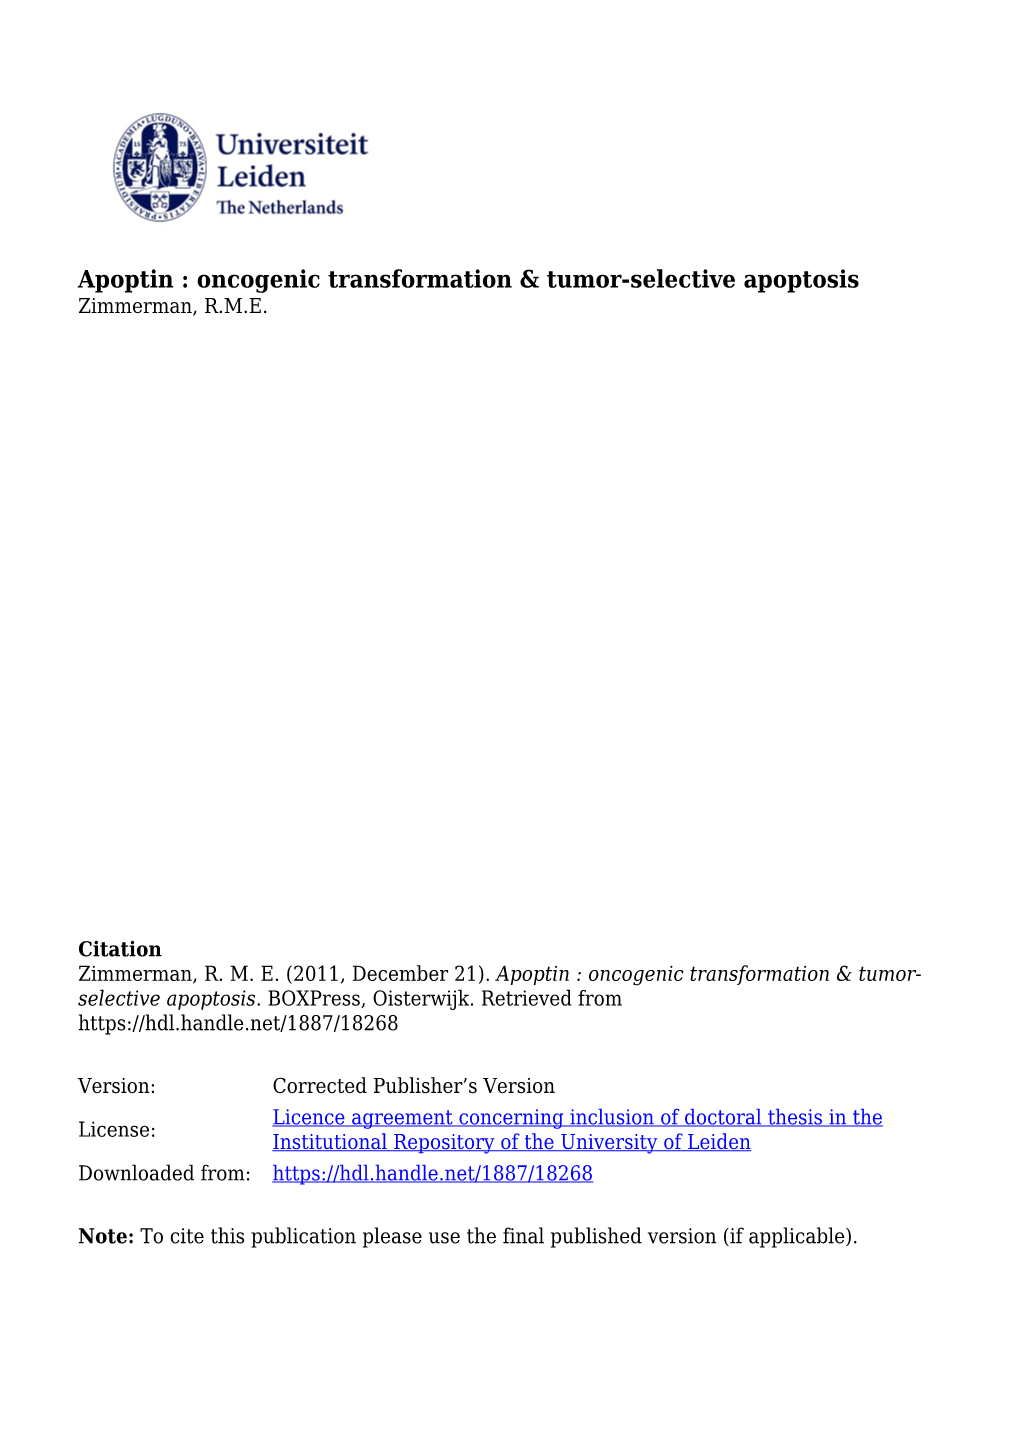 Apoptin : Oncogenic Transformation & Tumor-Selective Apoptosis Zimmerman, R.M.E